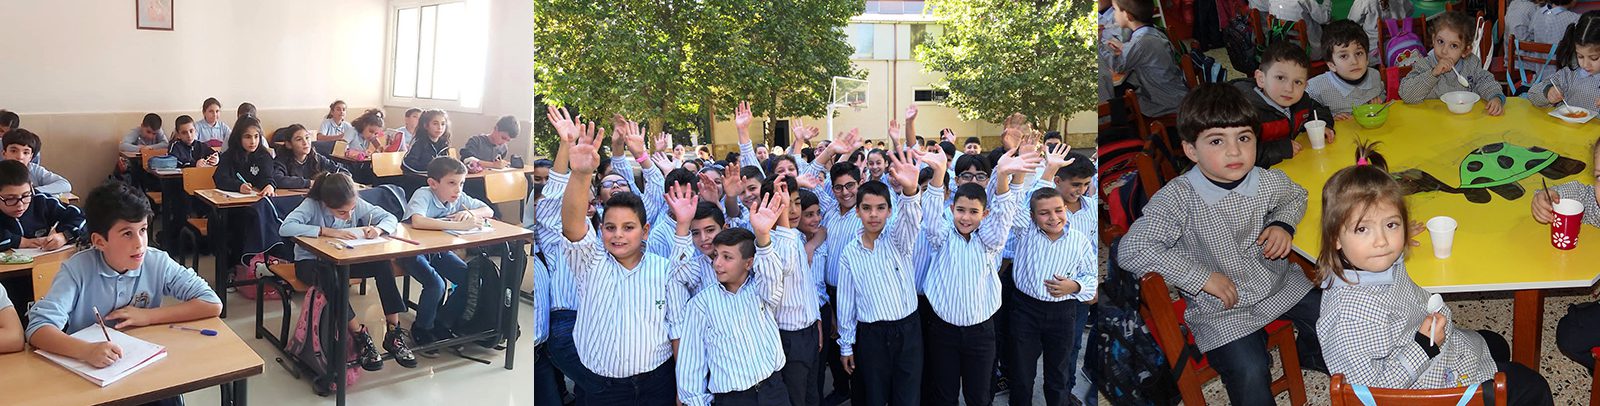 Katholieke scholen Libanon wanhopig op zoek naar hulp